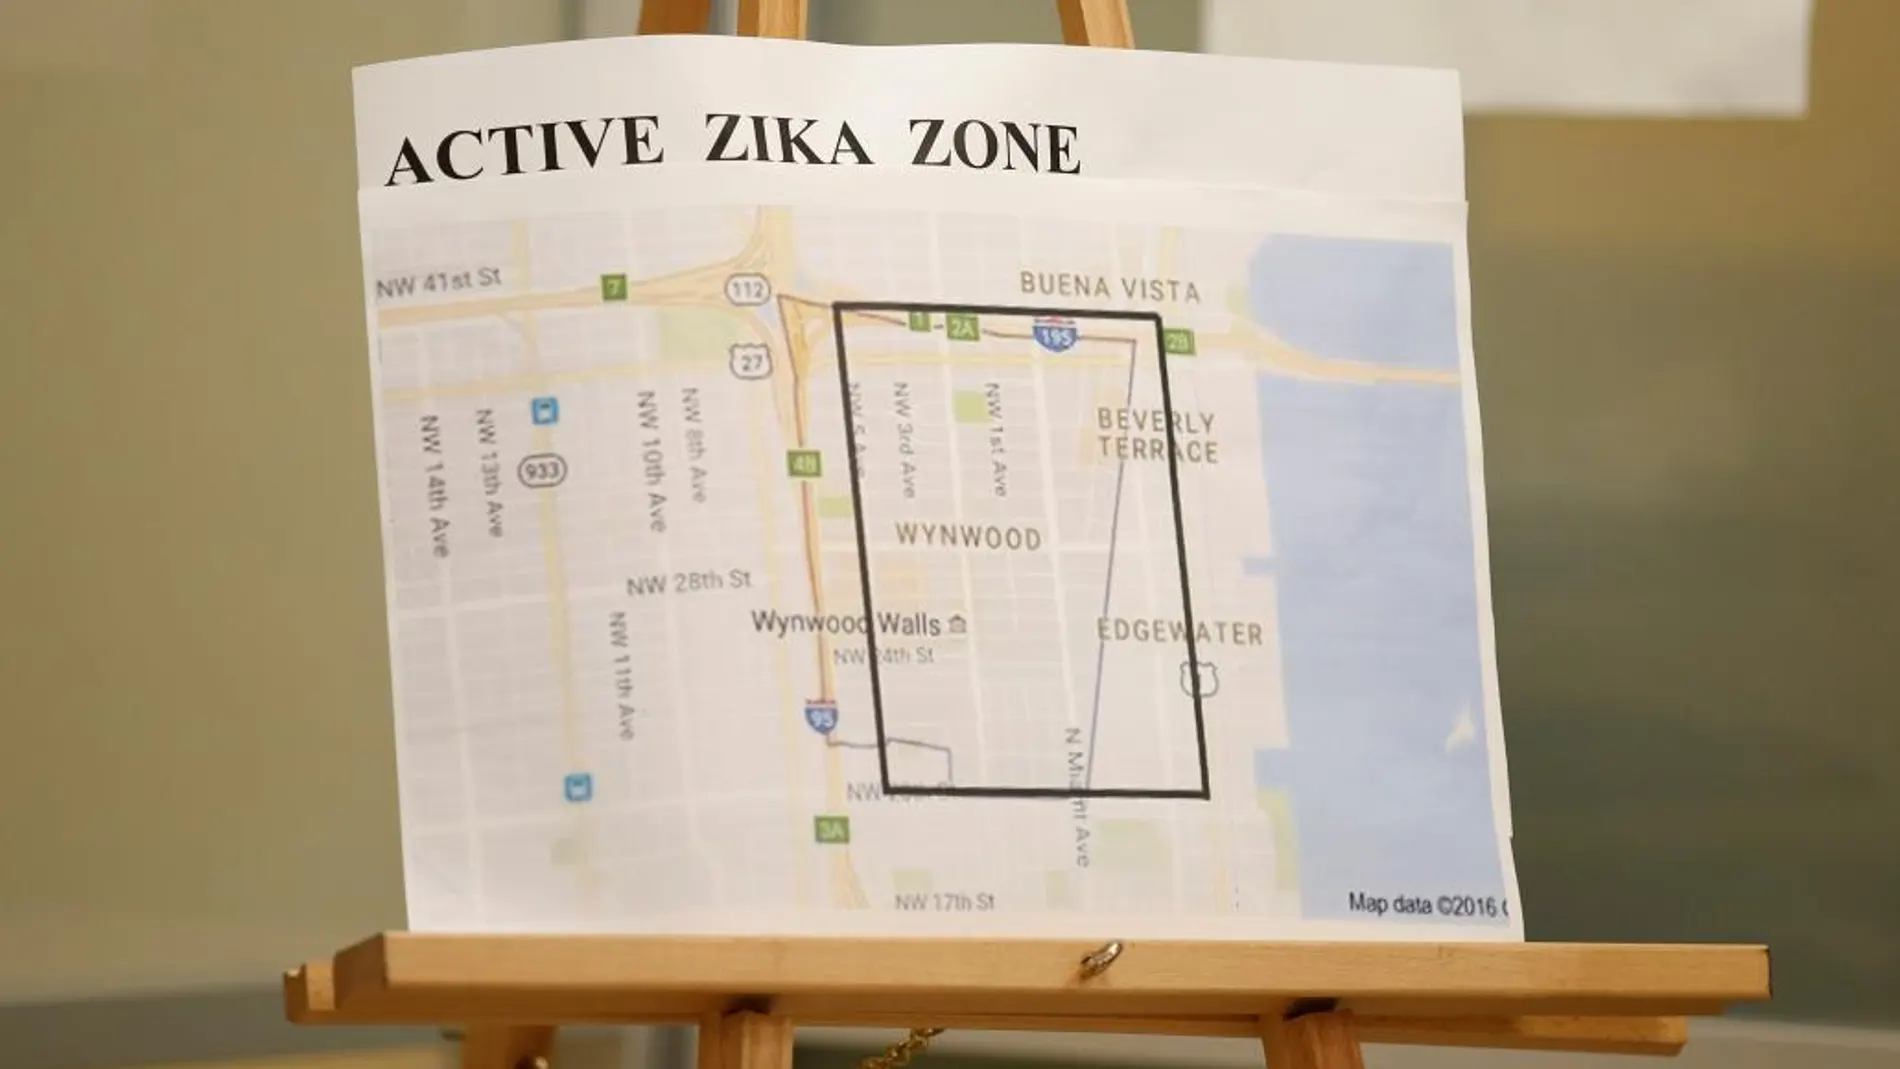 Un mapa con la zona activa del zika